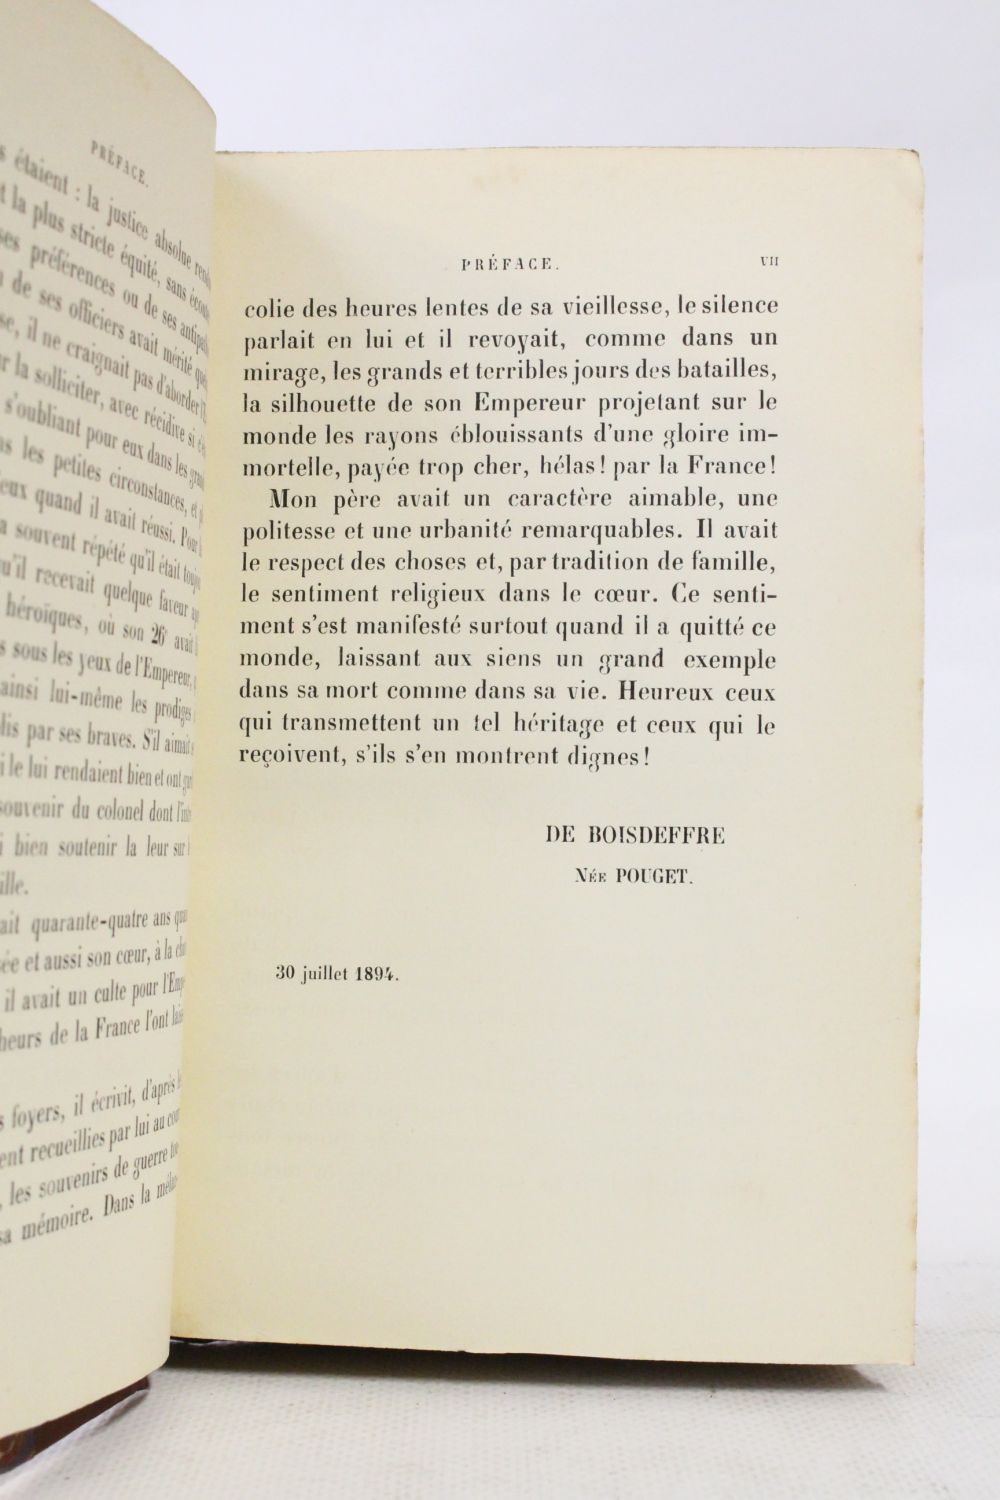 POUGET : Souvenirs de guerre du général baron Pouget publiés par madame ...